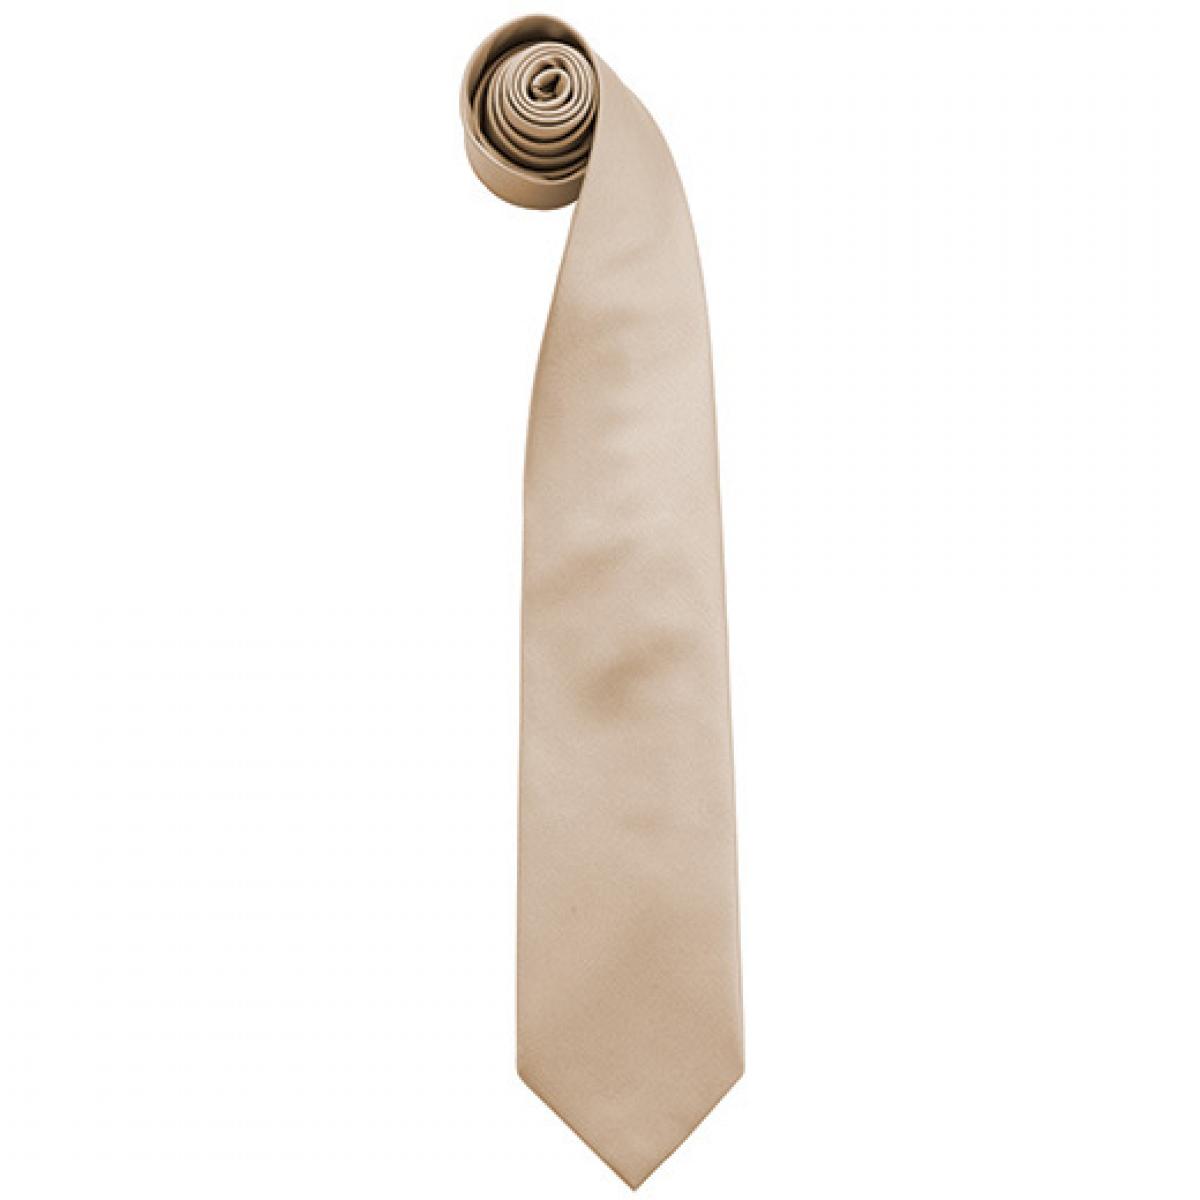 Hersteller: Premier Workwear Herstellernummer: PR765 Artikelbezeichnung: Krawatte Uni-Fashion / Colours Farbe: Khaki (ca. Pantone 452C)